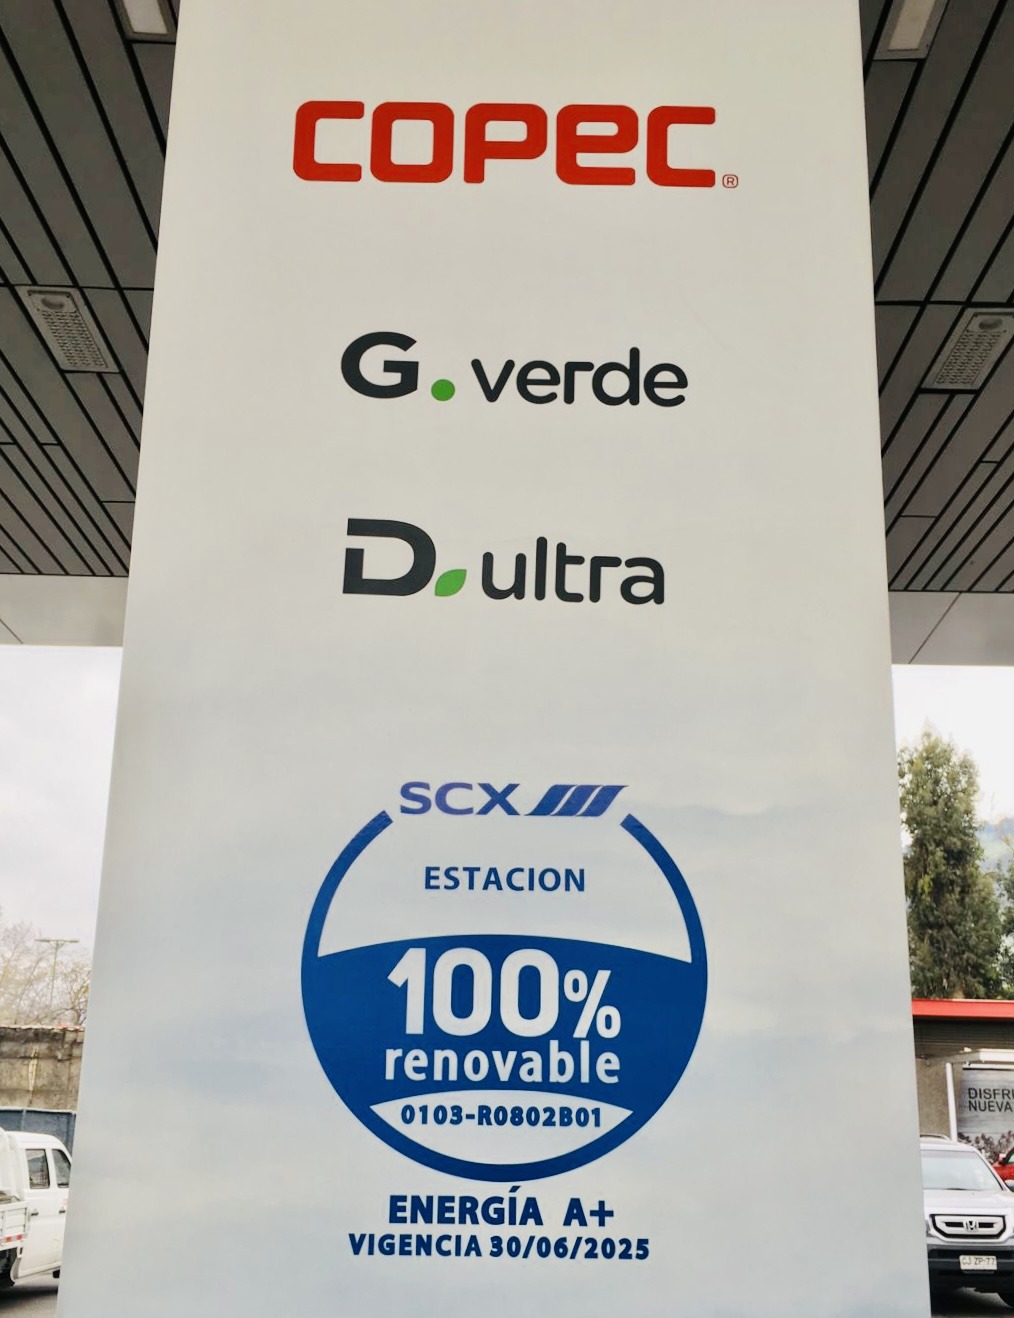 COPEC Service Stations, 100% renewable consumption